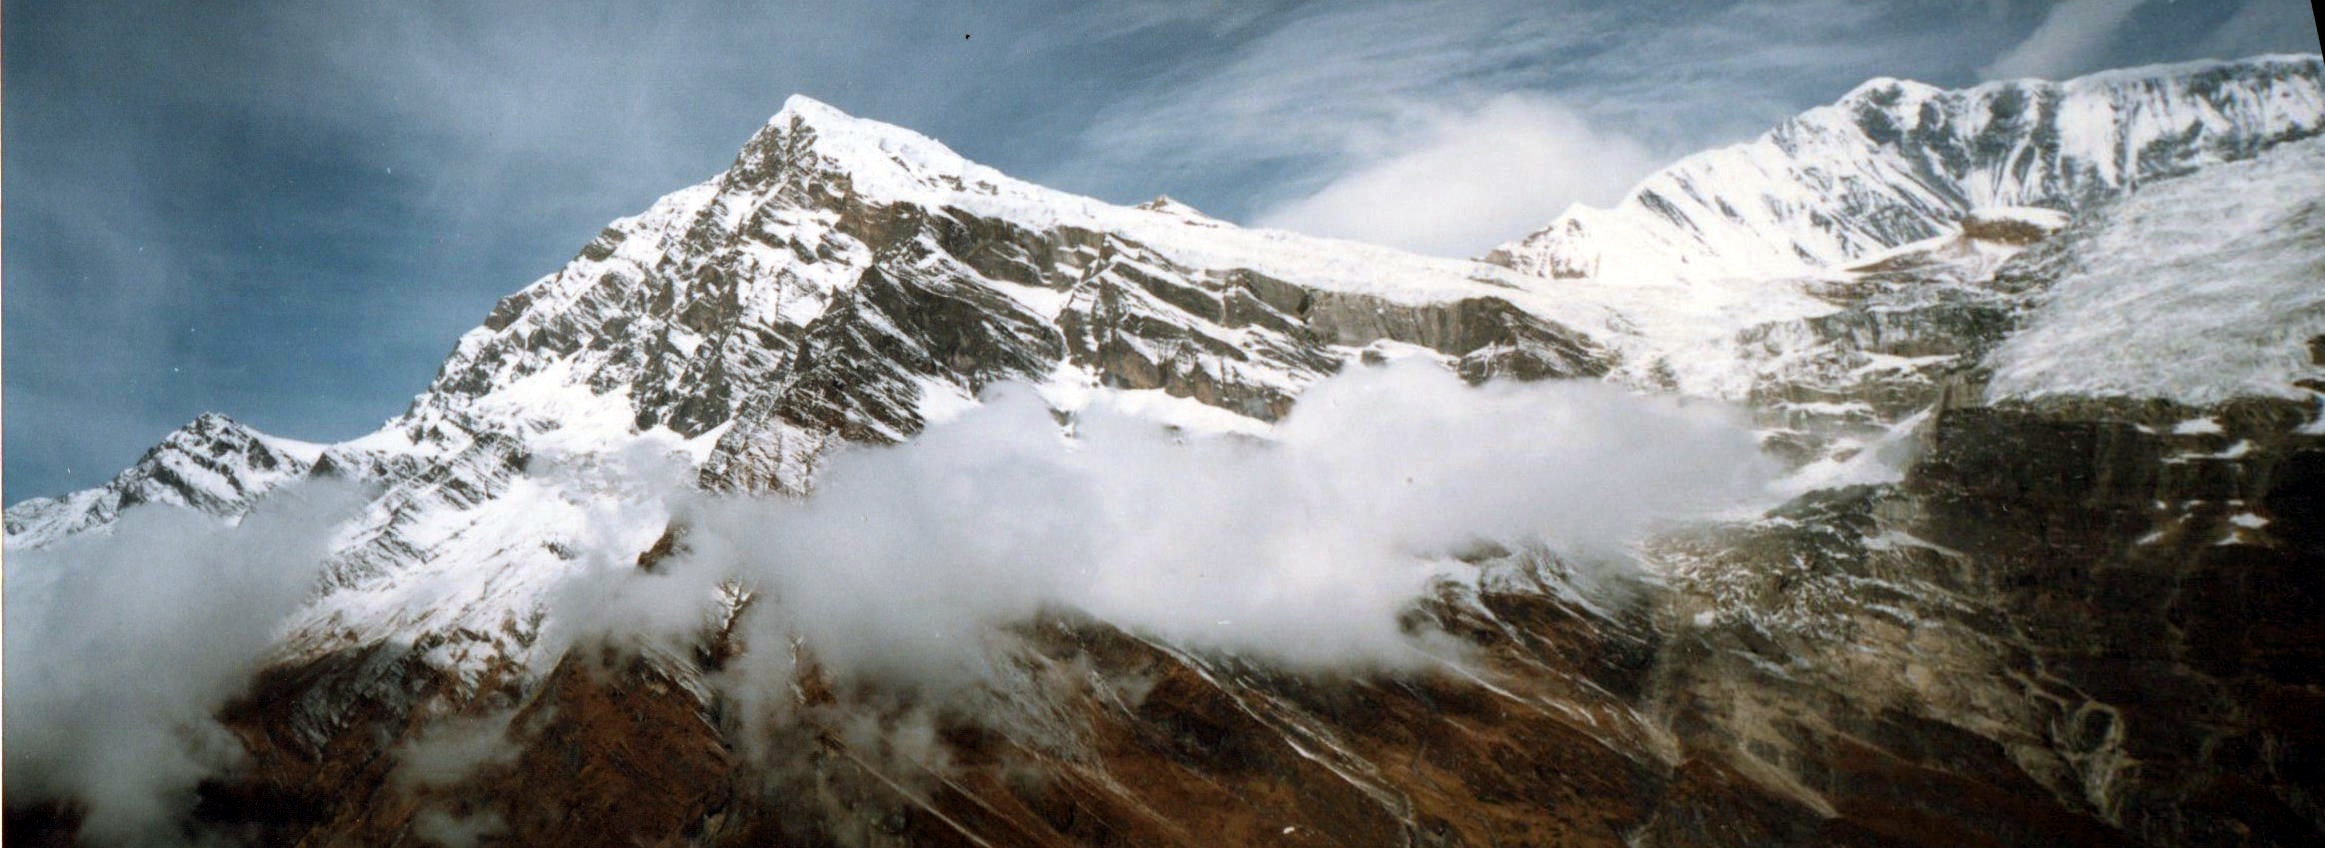 Manapathi Peak ( 6380m ) and Dhaulagiri V ( 7616m ) from above Italian Base Camp